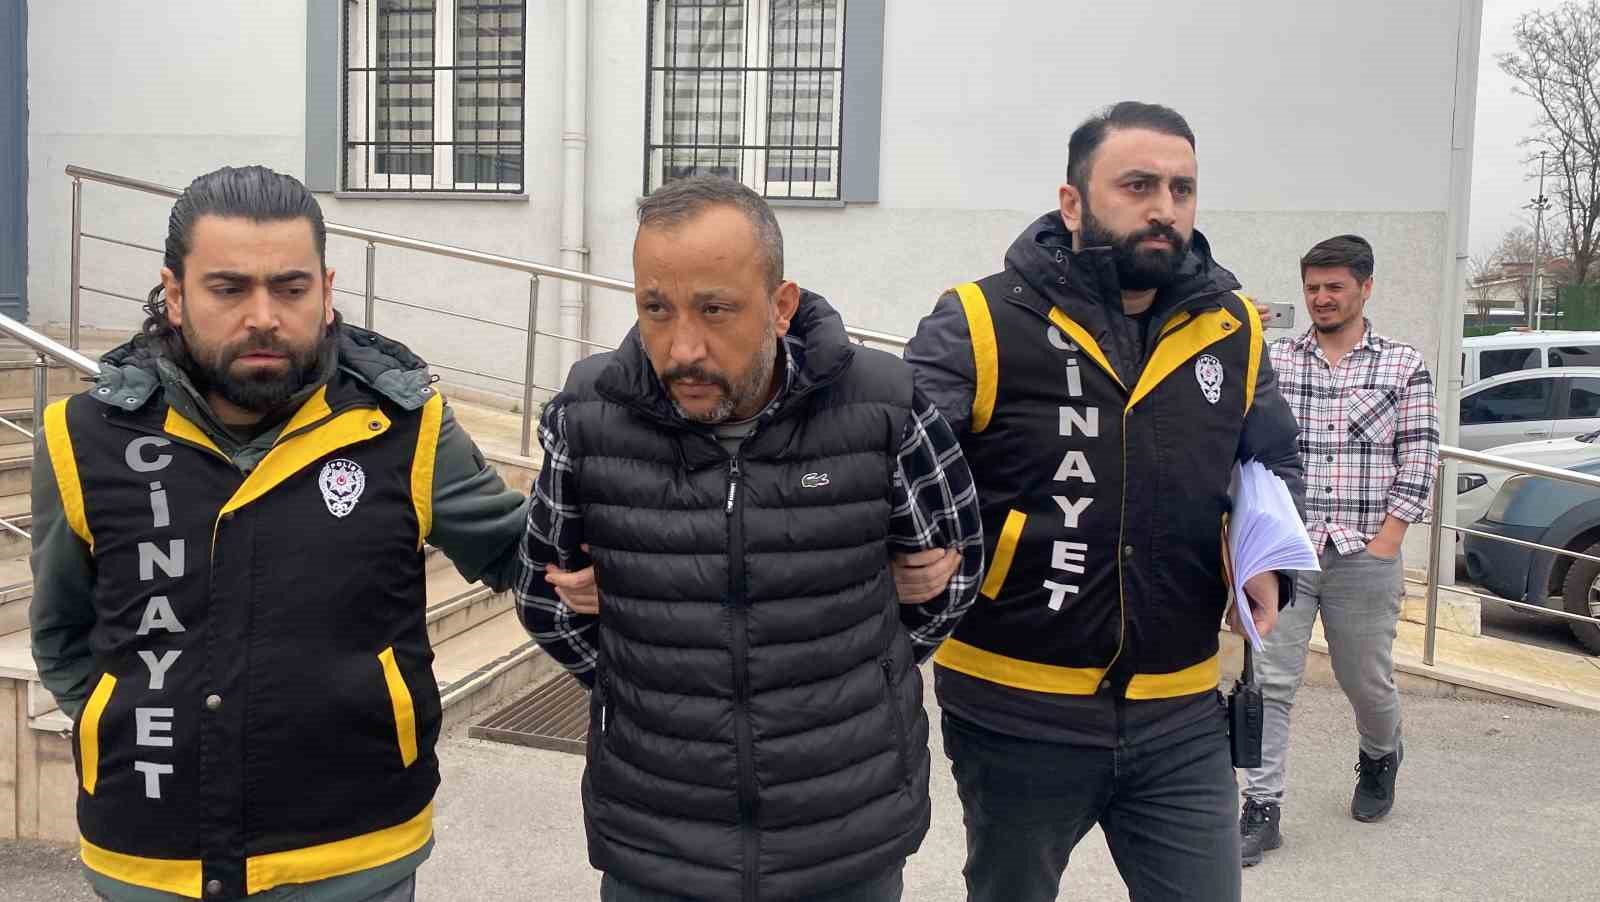 Bursa’da aşık olduğu solisti öldüren şahsa müebbet hapis talebi